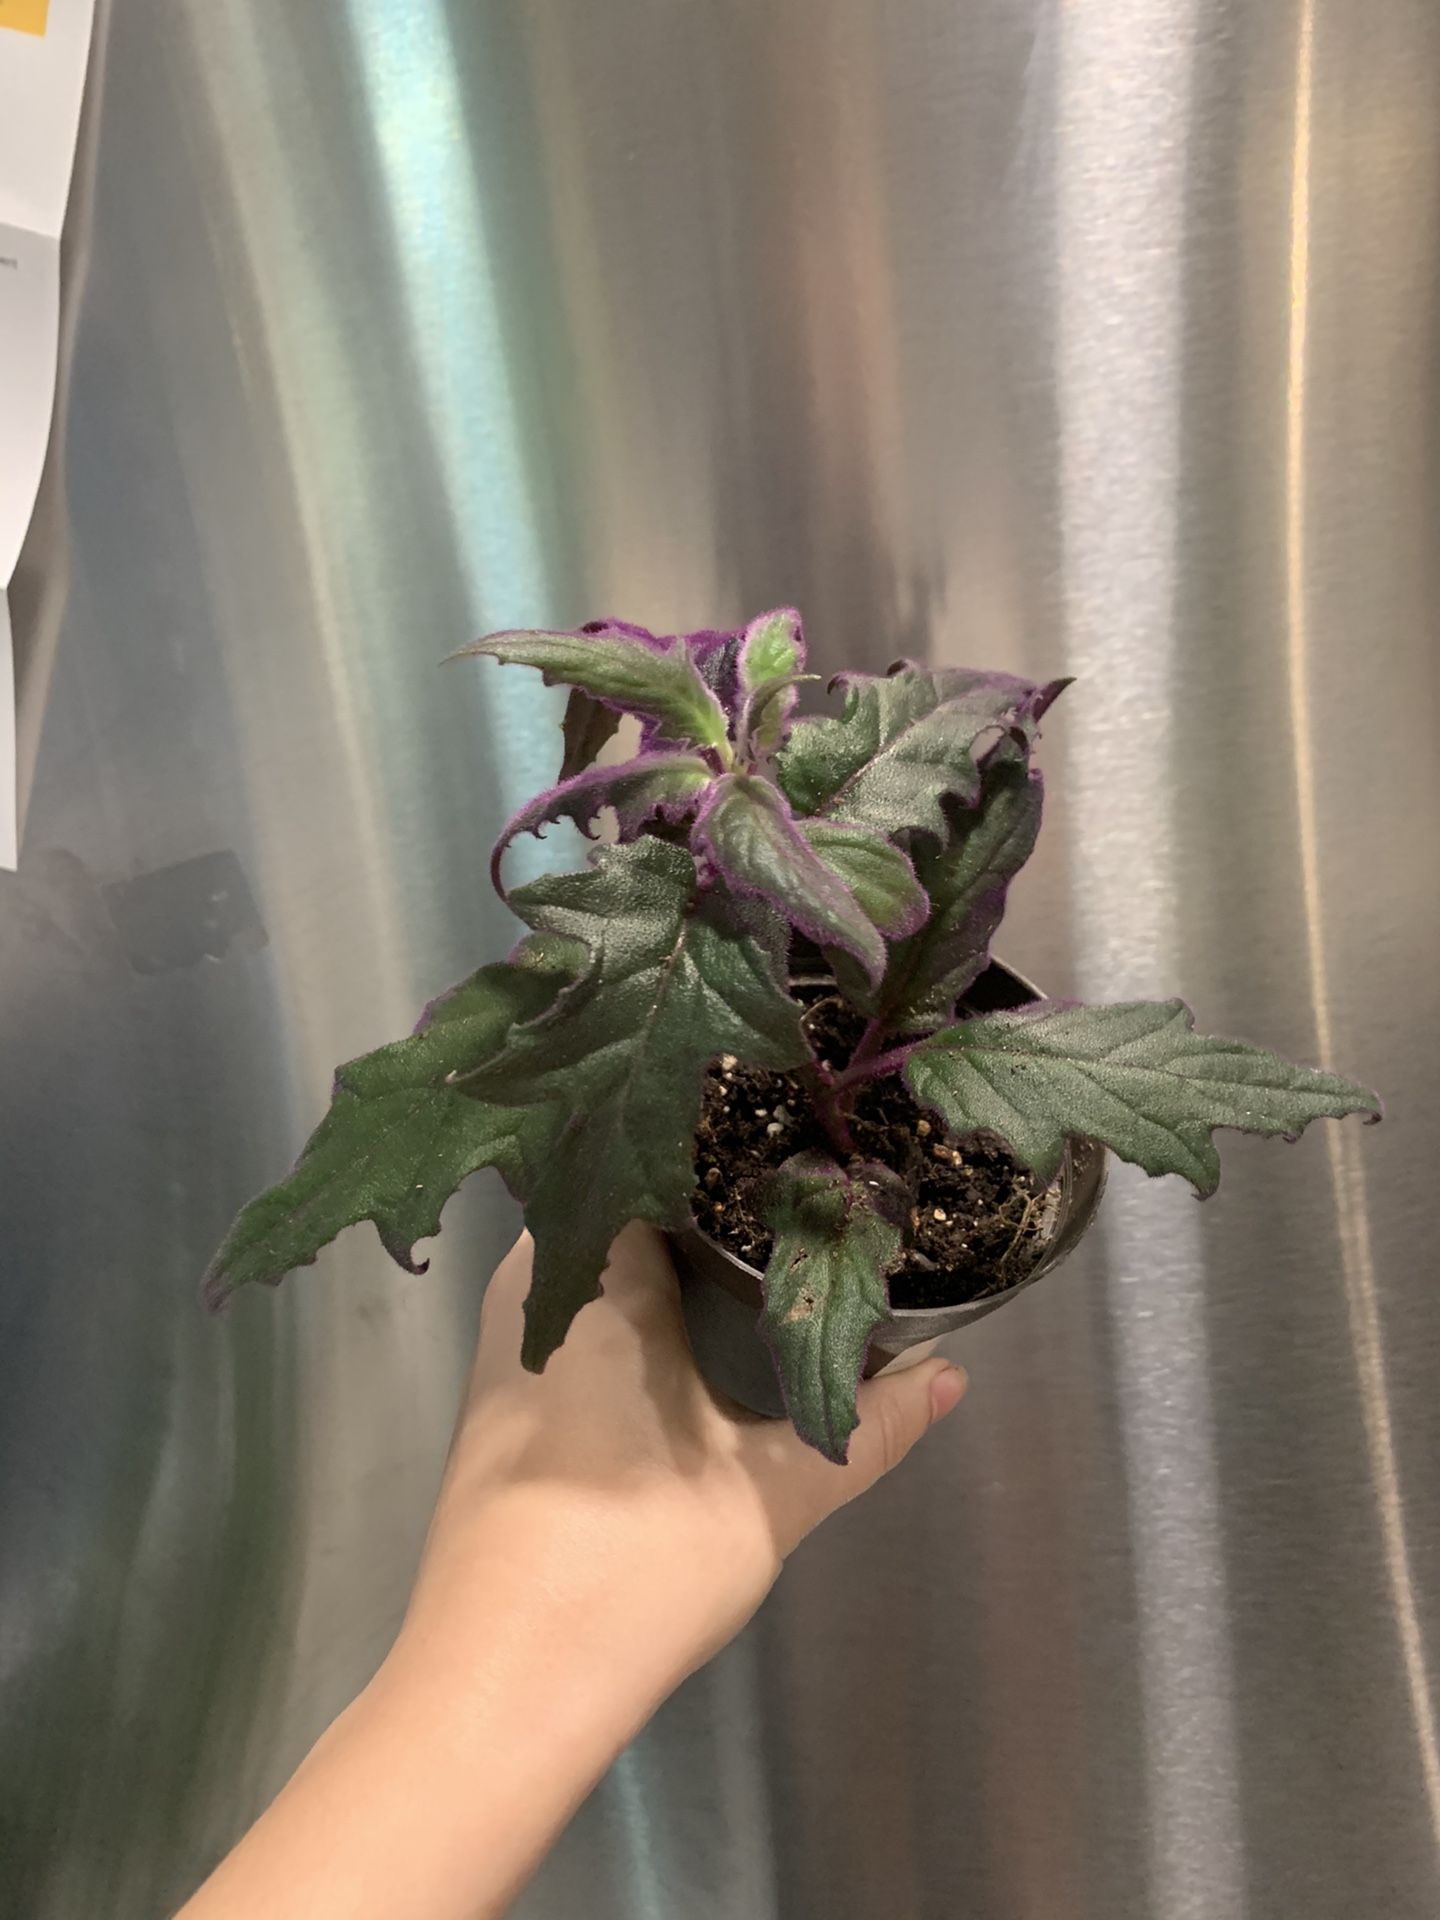 Purple passion plant 4” pot